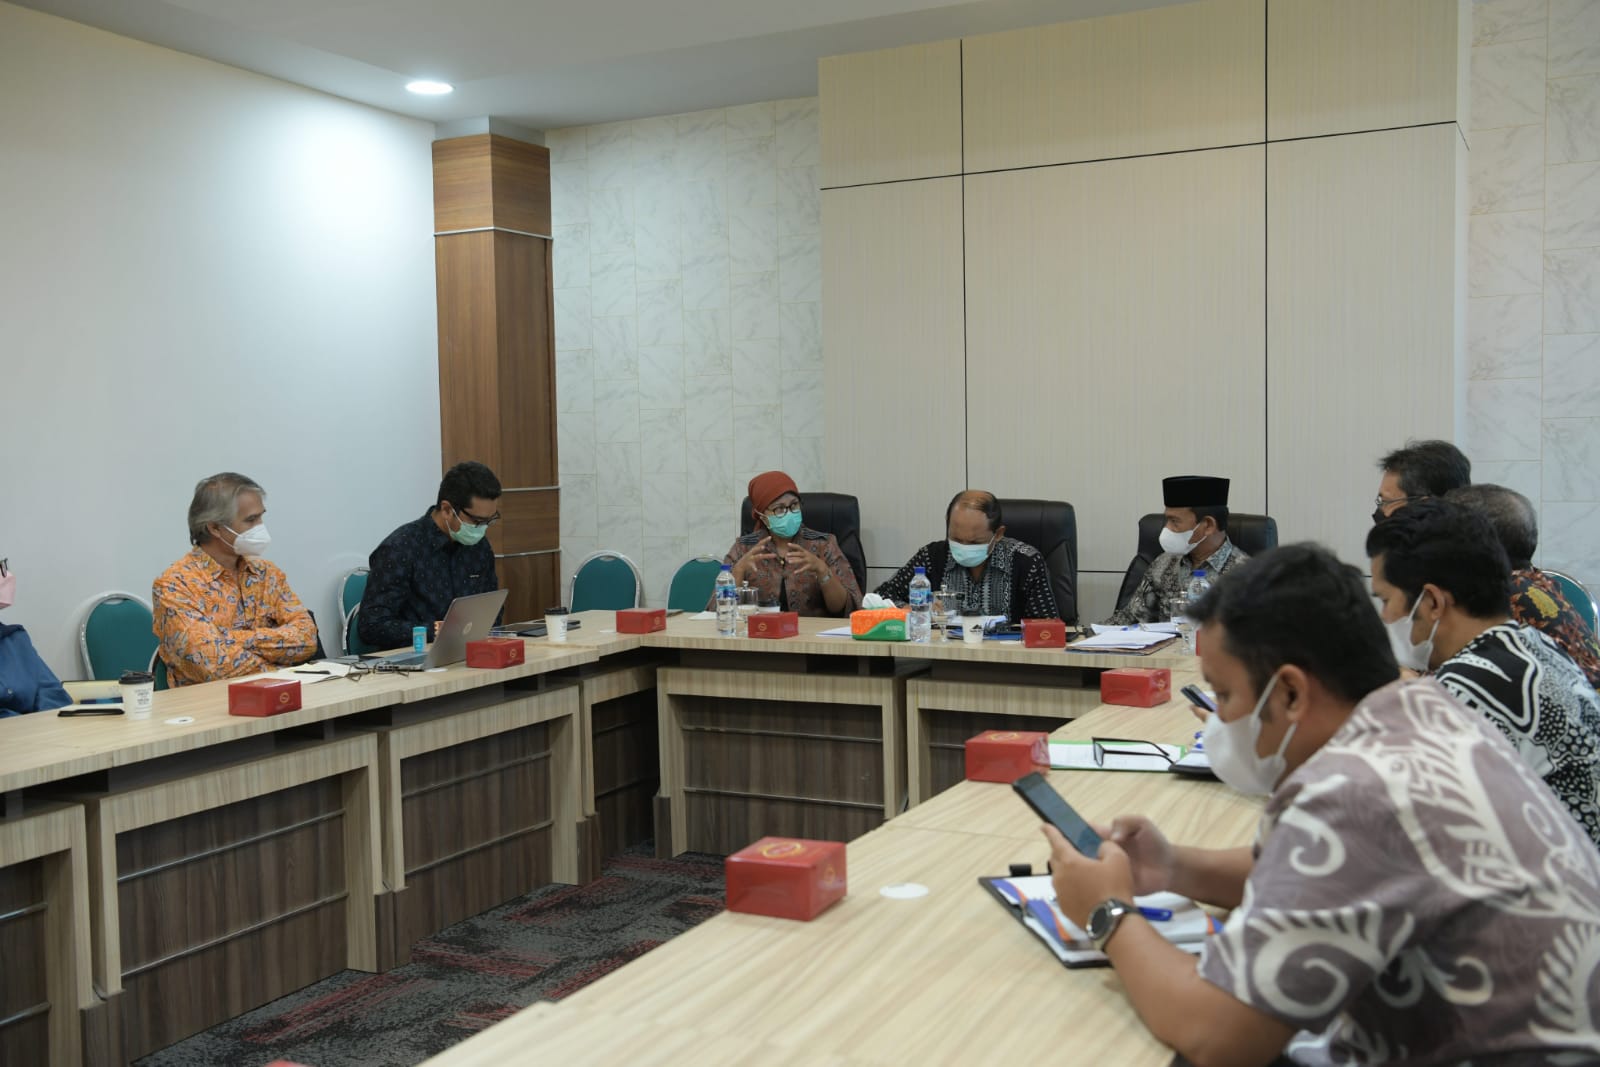 Asisten Pemerintahan dan Keistemewaan Aceh M Jafar bersama Asisten Perekonomian dan Pembangunan Sekda Aceh Mawardi serta SKPA terkait lainnya, menerima kunjungan audiensi Kolaborasi Masyarakat dan Pelayanan untuk Kesejahteraan (KOMPAK), di ruang Potensi Daerah Setda Aceh, Banda Aceh, Kamis (13/1/2022).